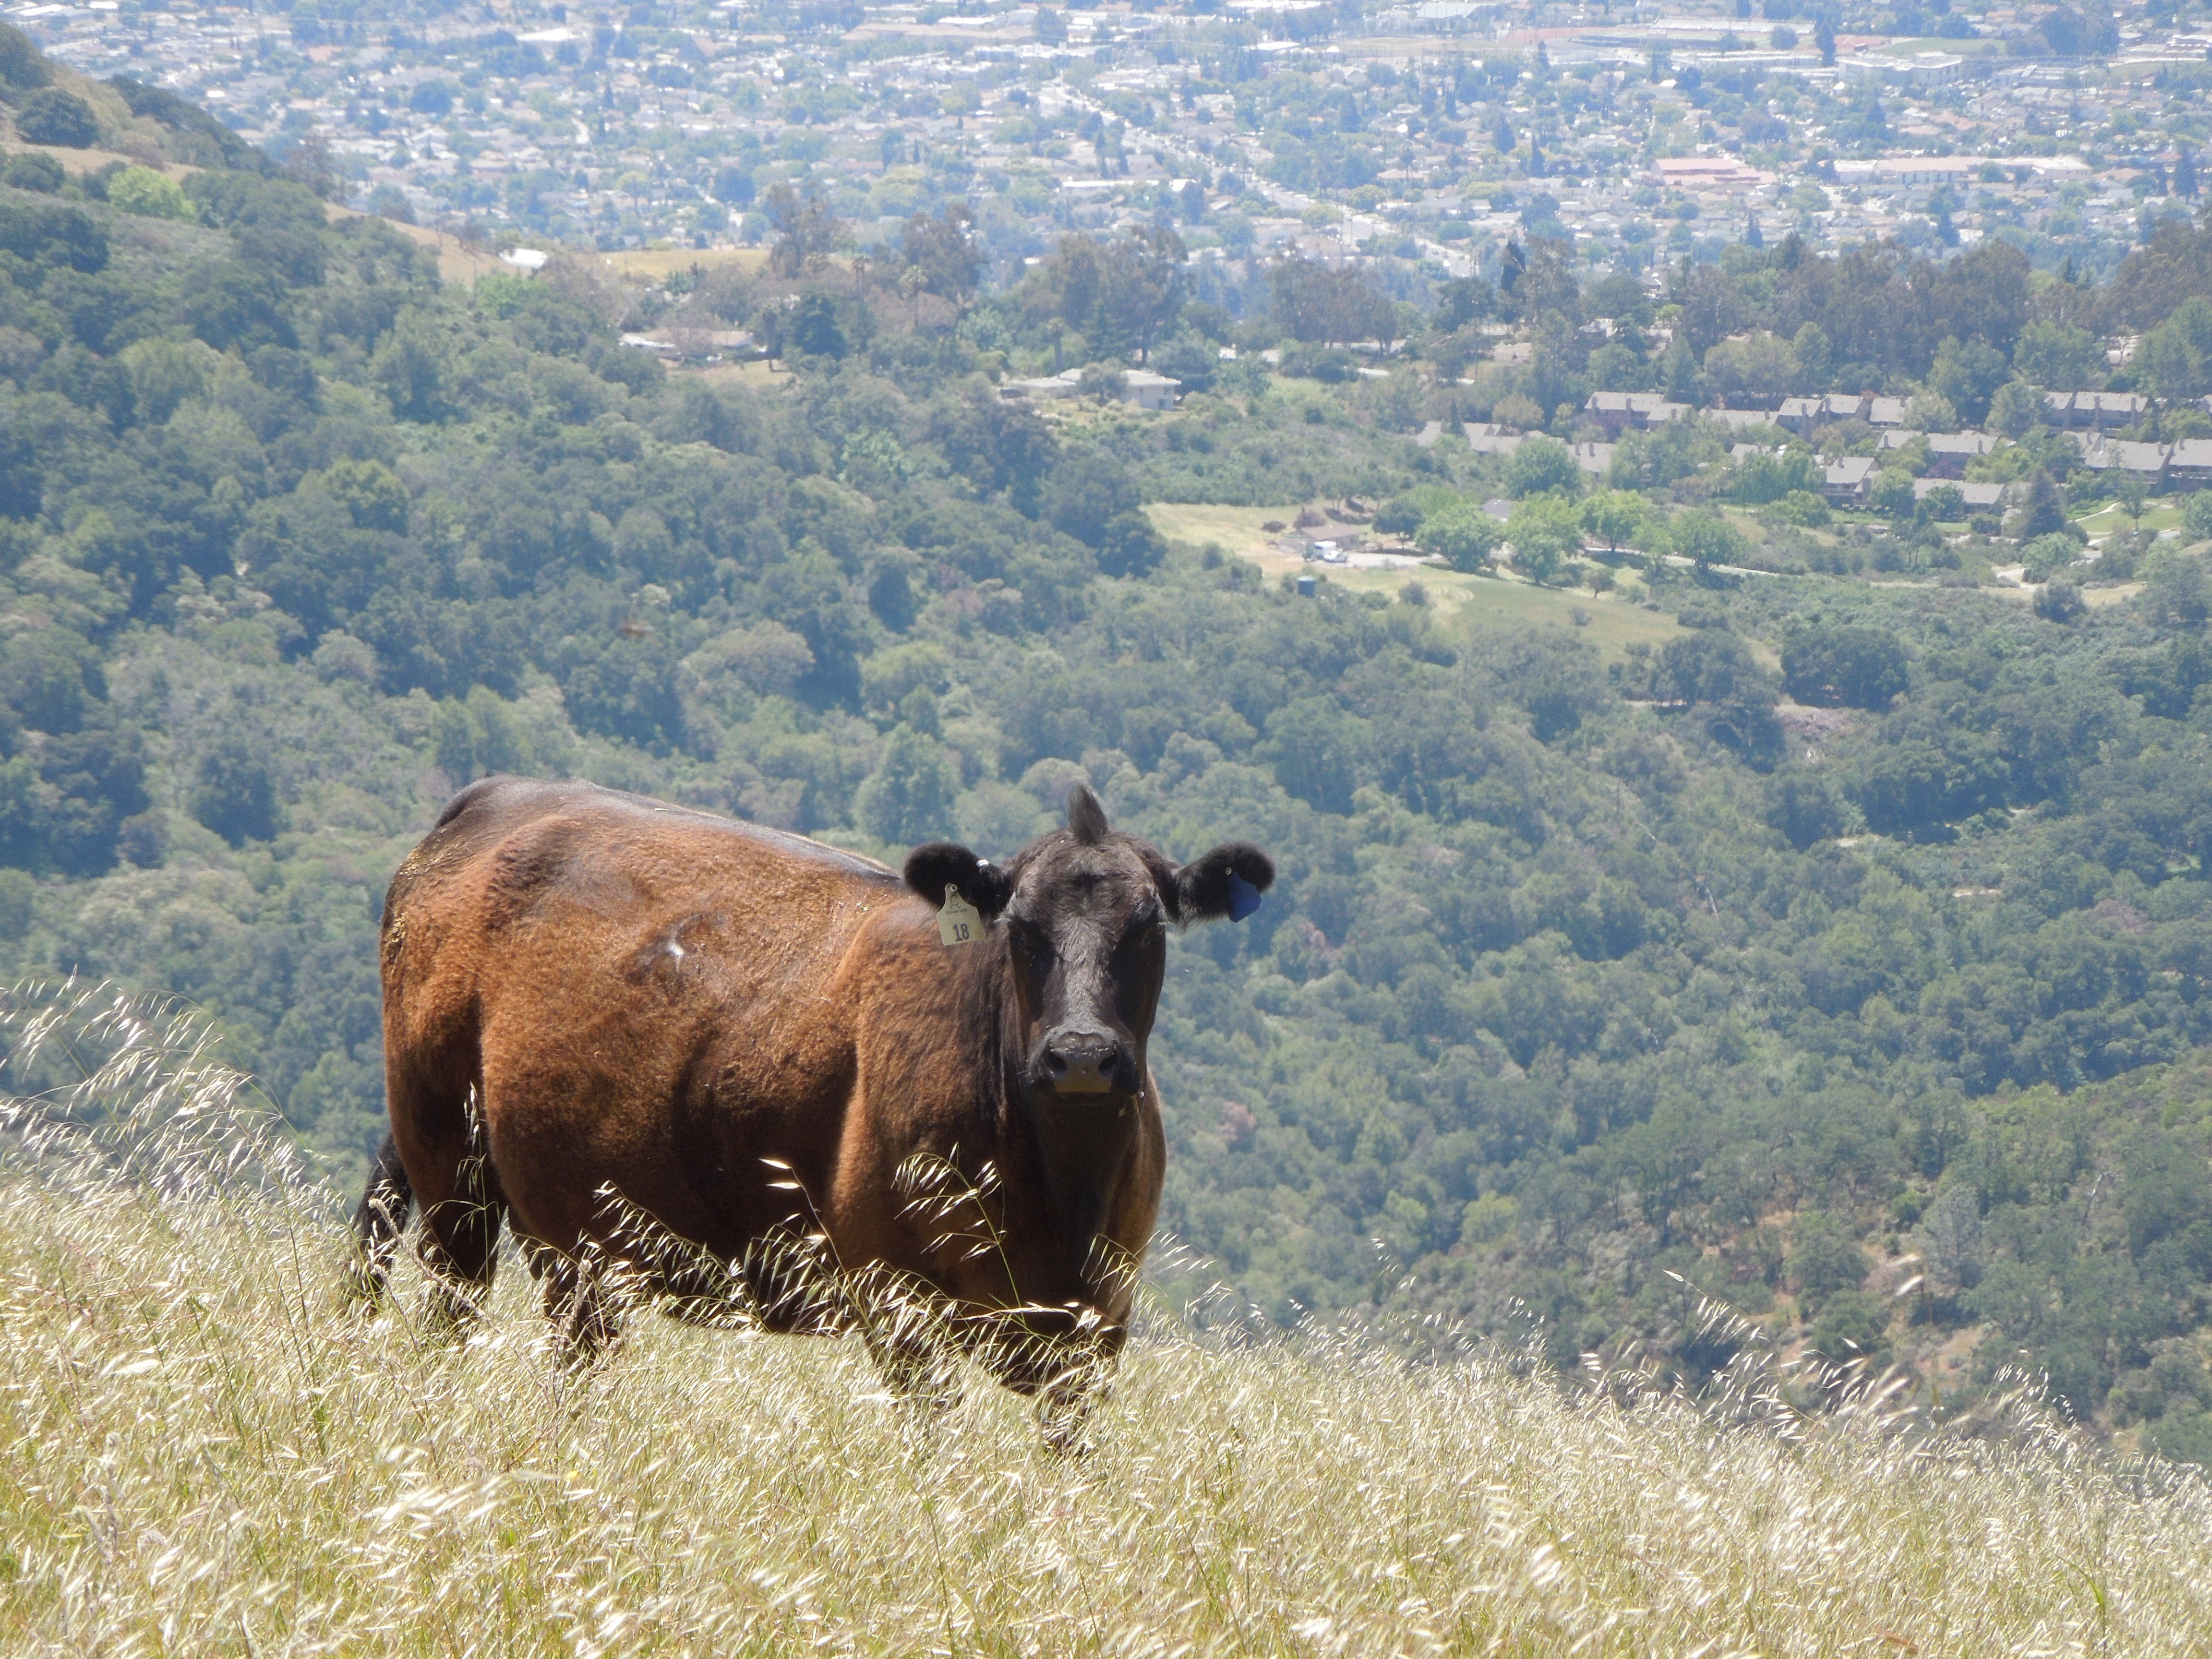 Sierra Vista - Cows - CK - 05-13-2014 - 3